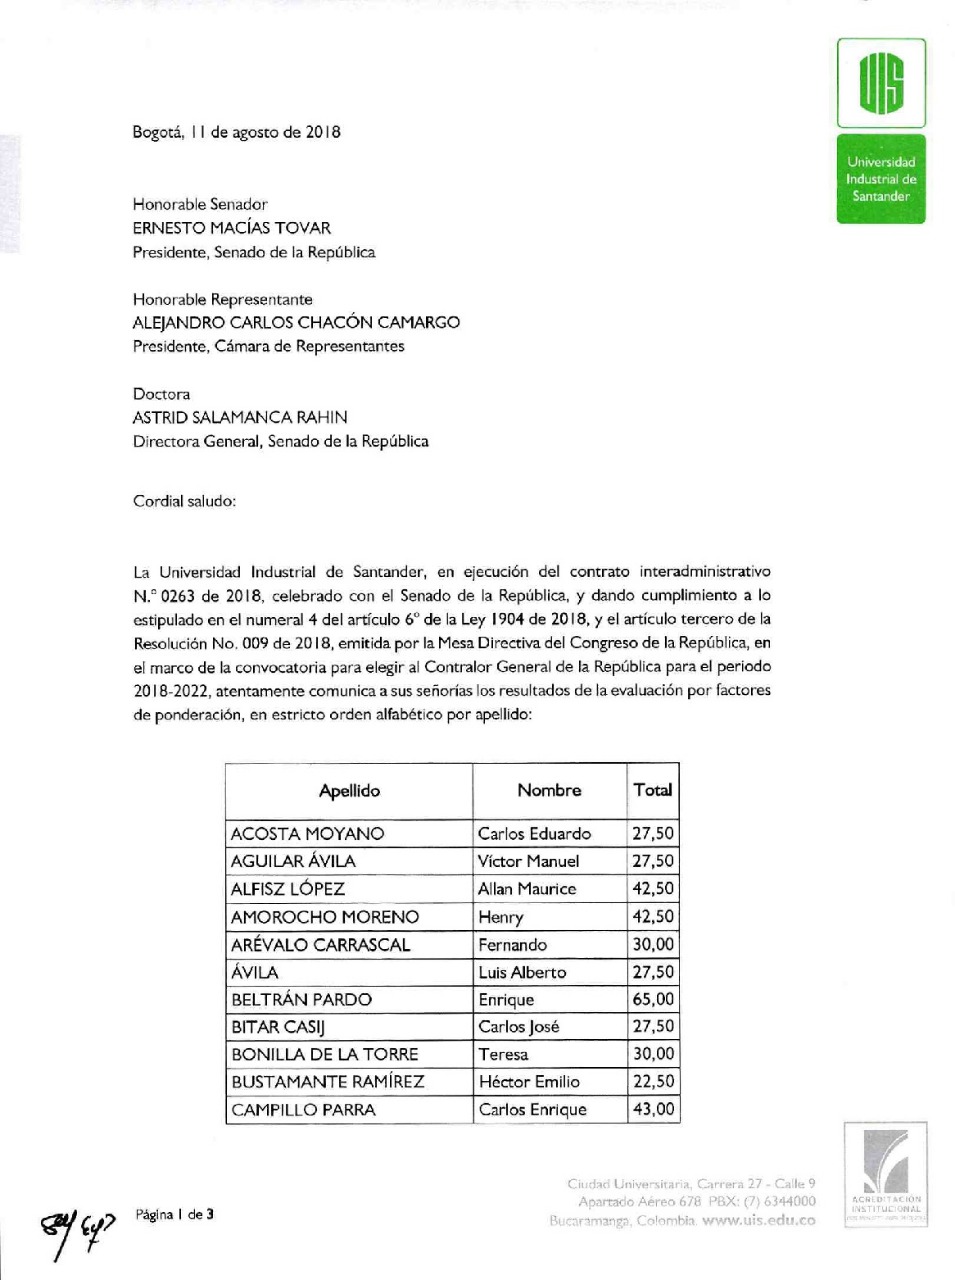 Evaluación de la Universidad Industrial de Santander a los aspirantes. 